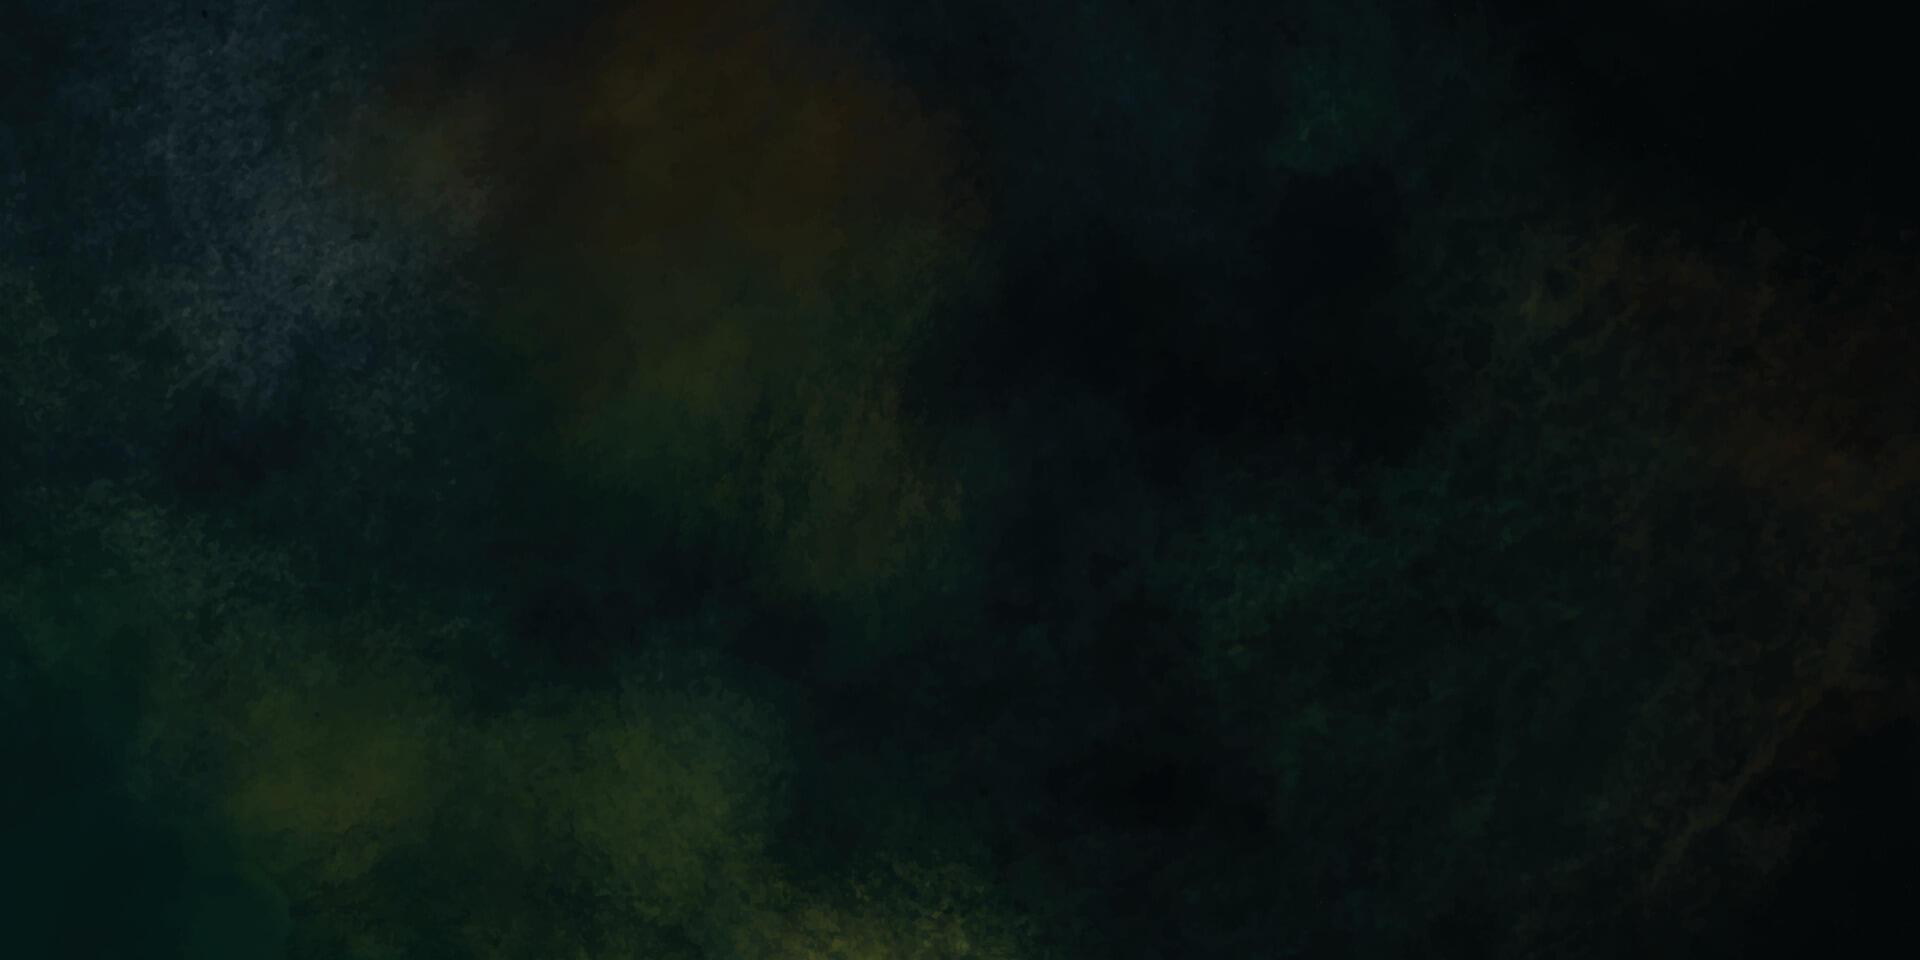 black and green background. dark grunge texture vector